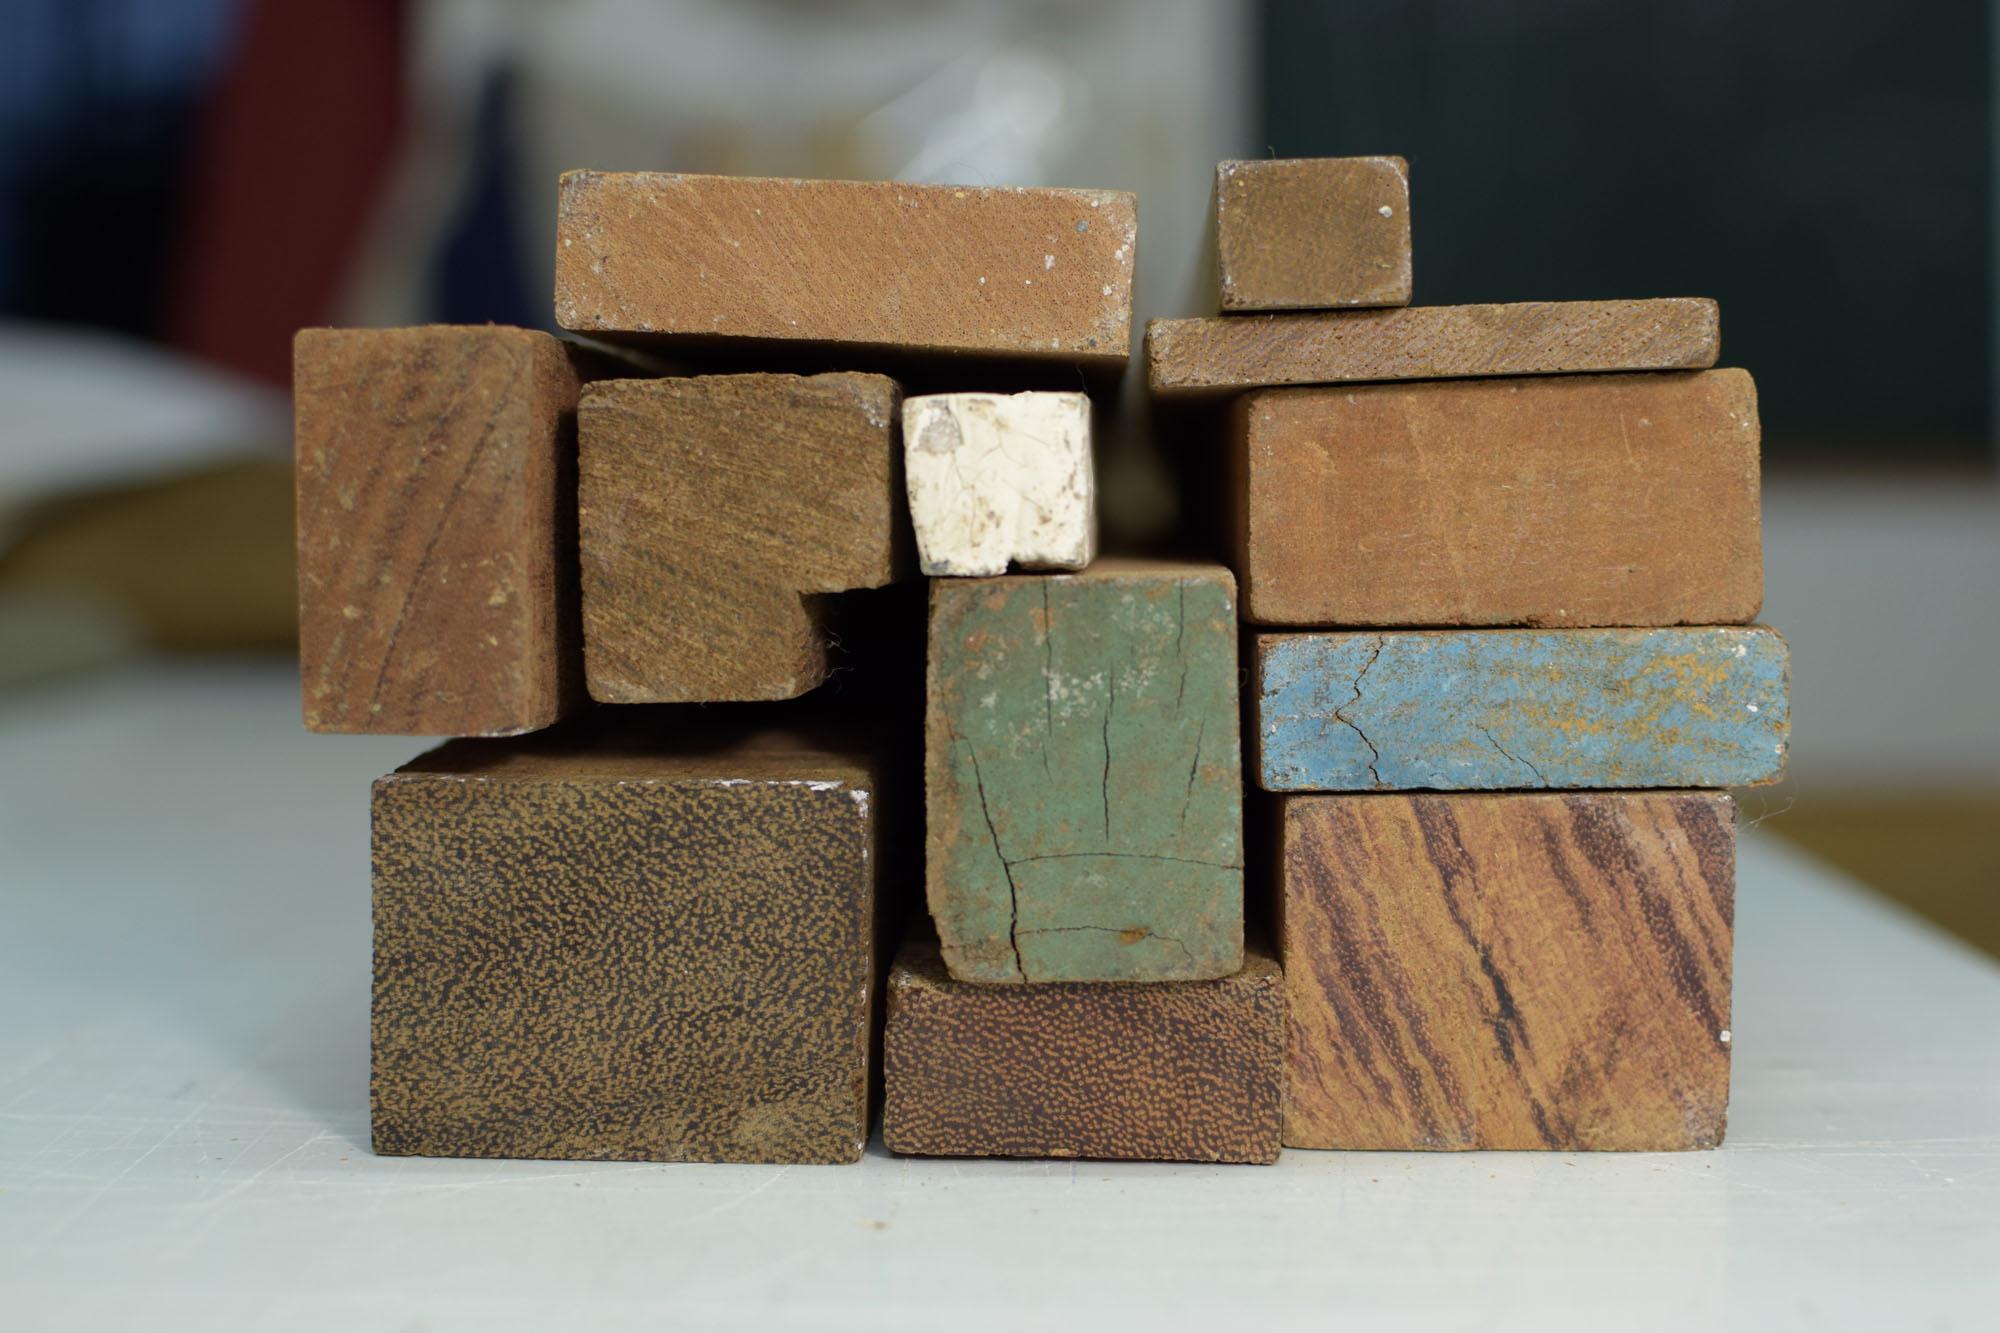 Holzleisten aus einer Bootsbauer-Werkstatt aus besonders festem dunkelbraunen Holz zu einem Puzzle zusammen gelegt.